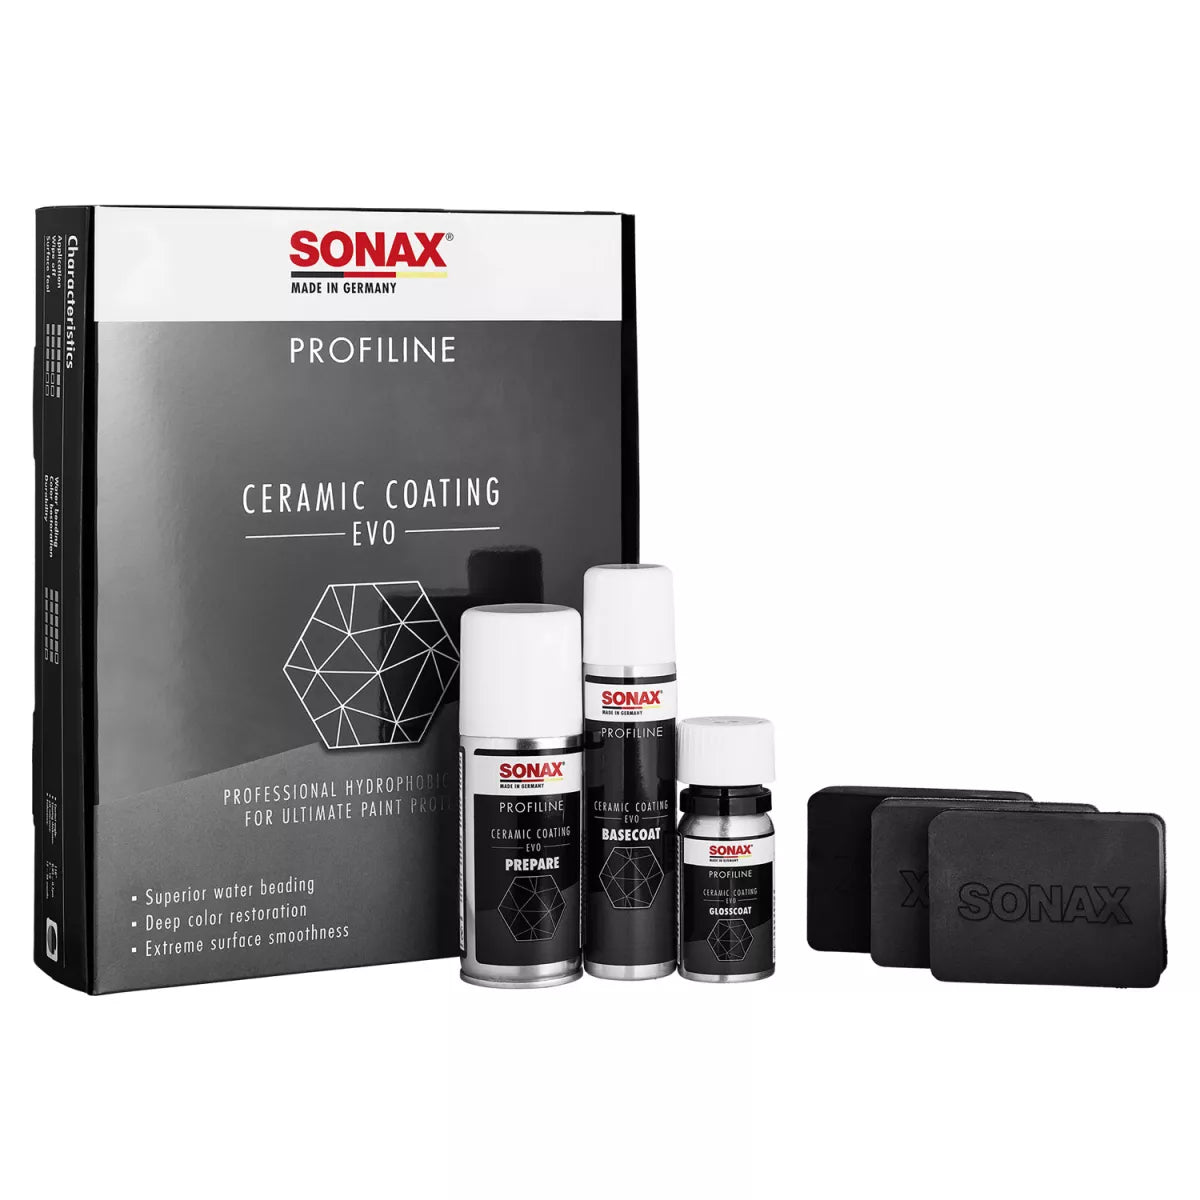 SONAX PROFILINE Ceramic Coating CC Evo Keramikversiegelungsset